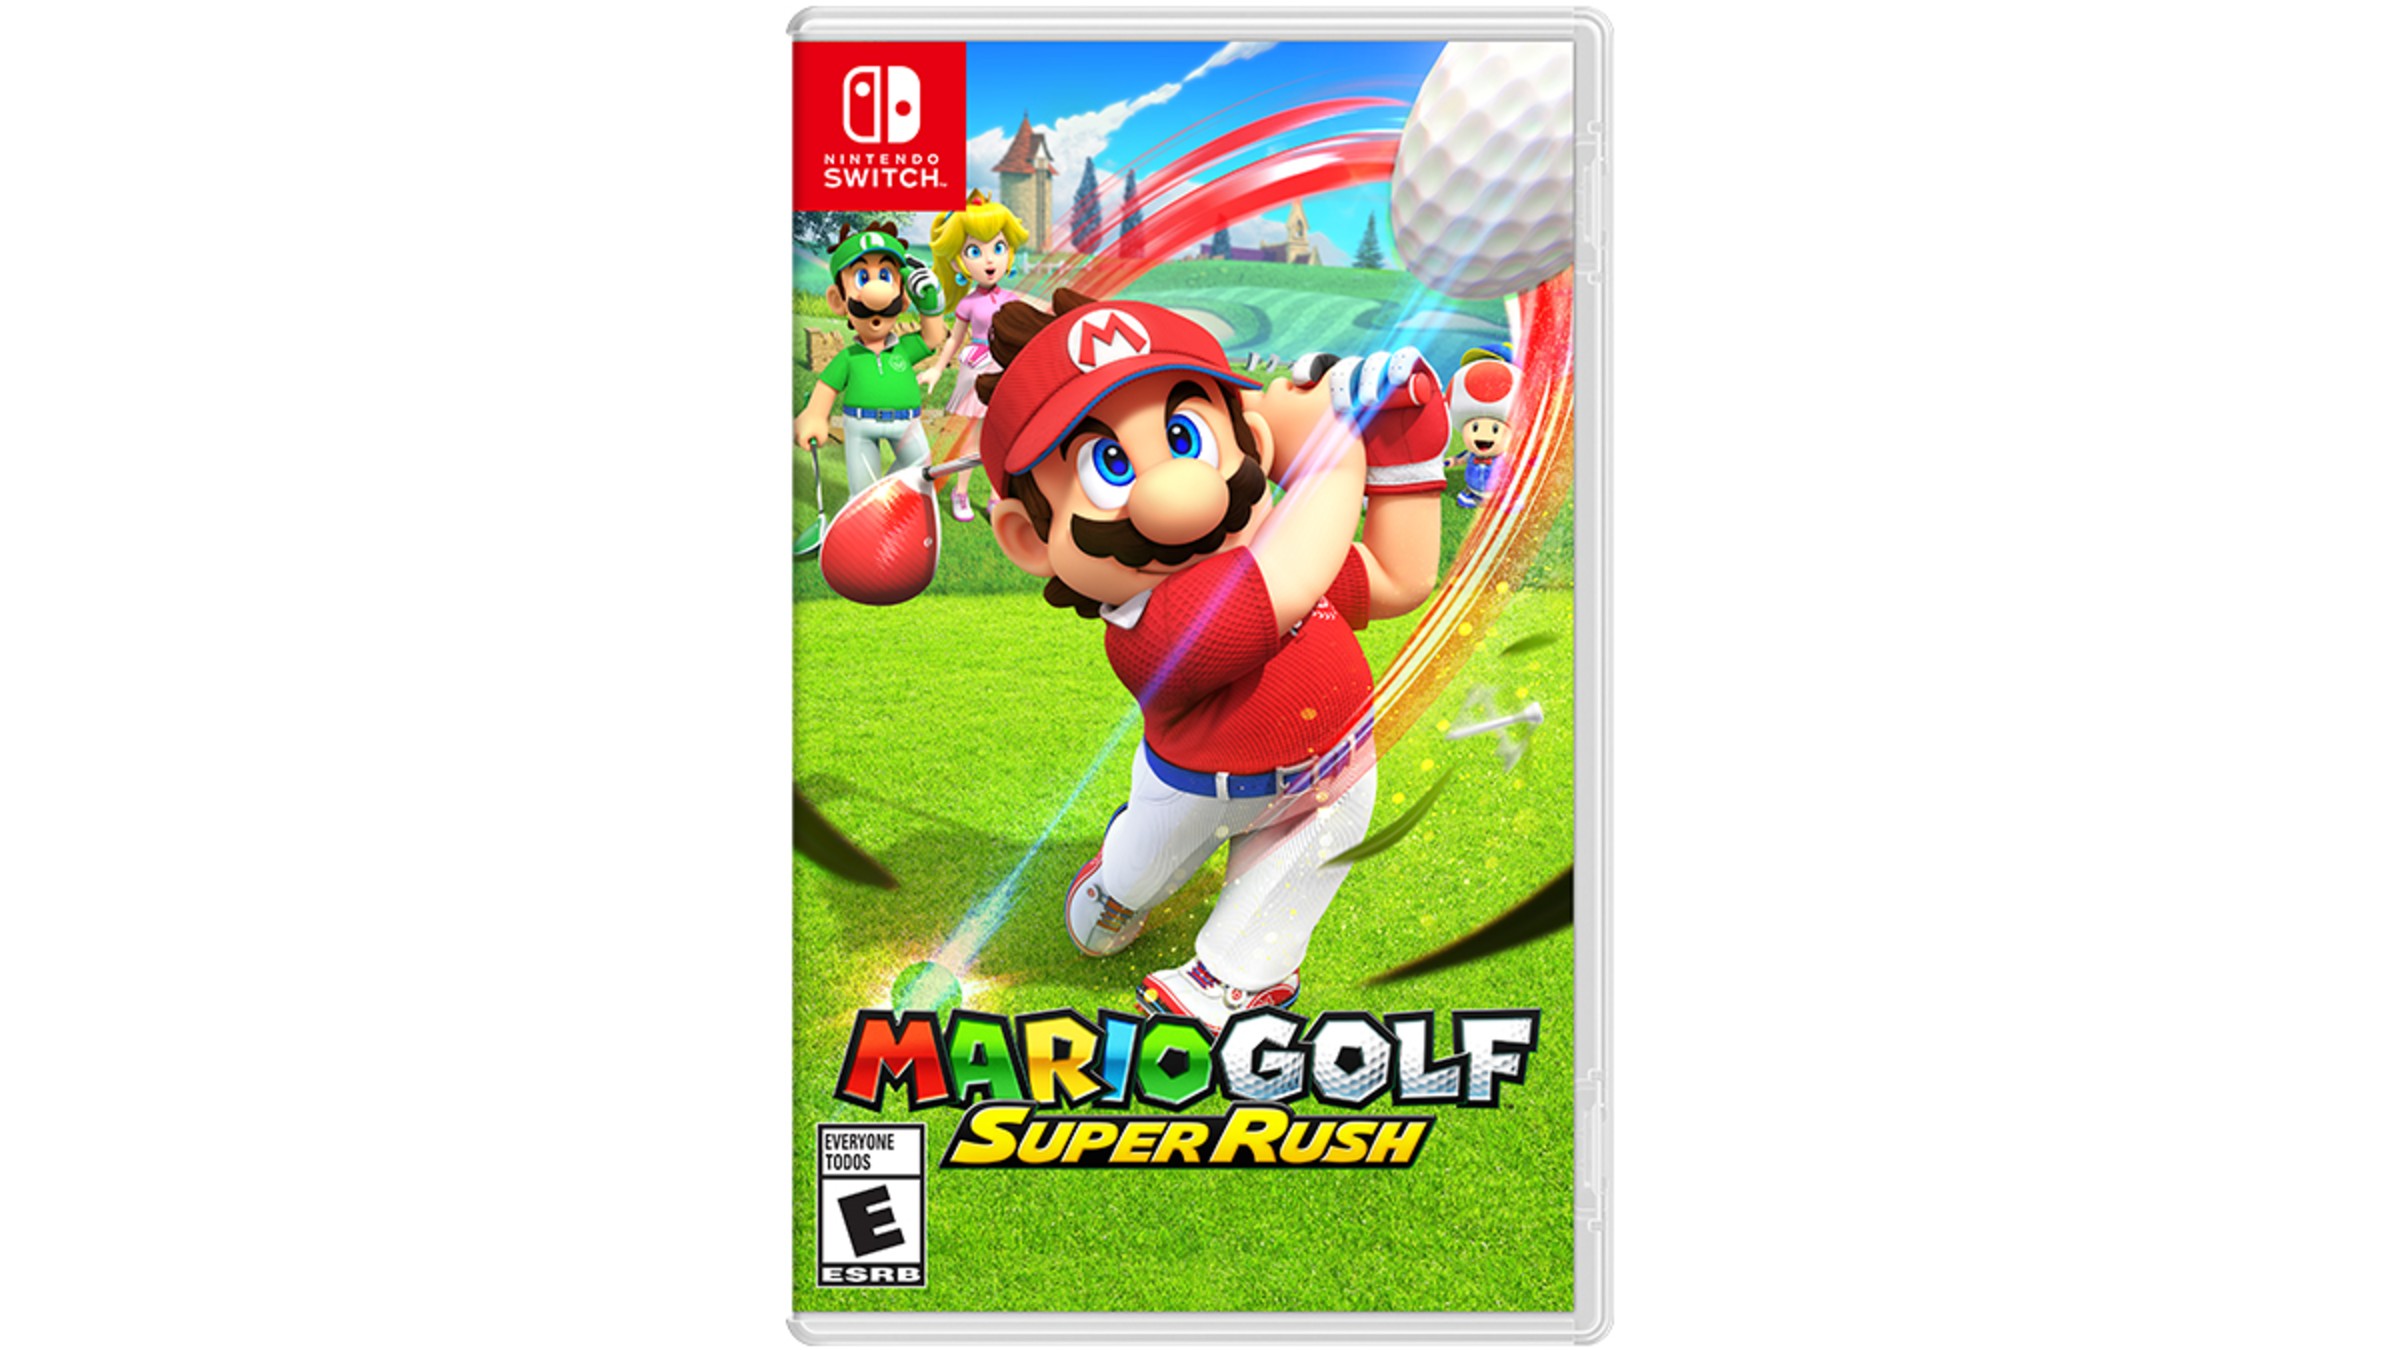 Sitcom kraam druiven Mario Golf™: Super Rush for Nintendo Switch - Nintendo Official Site